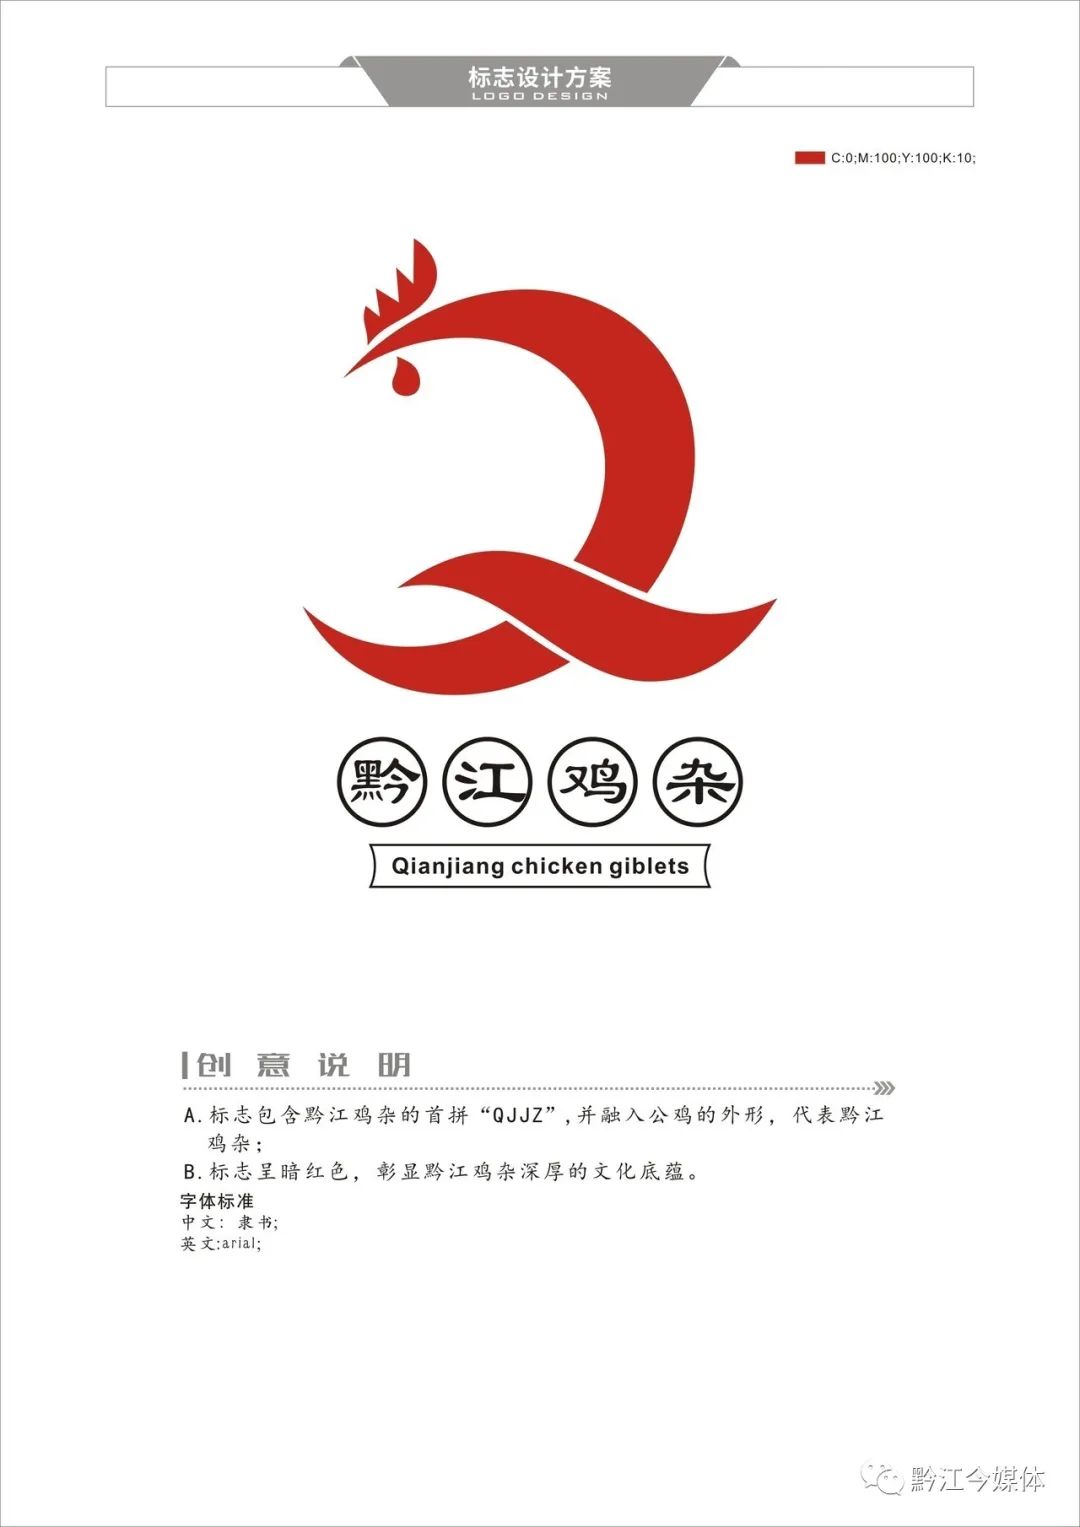 黔江鸡杂logo图片